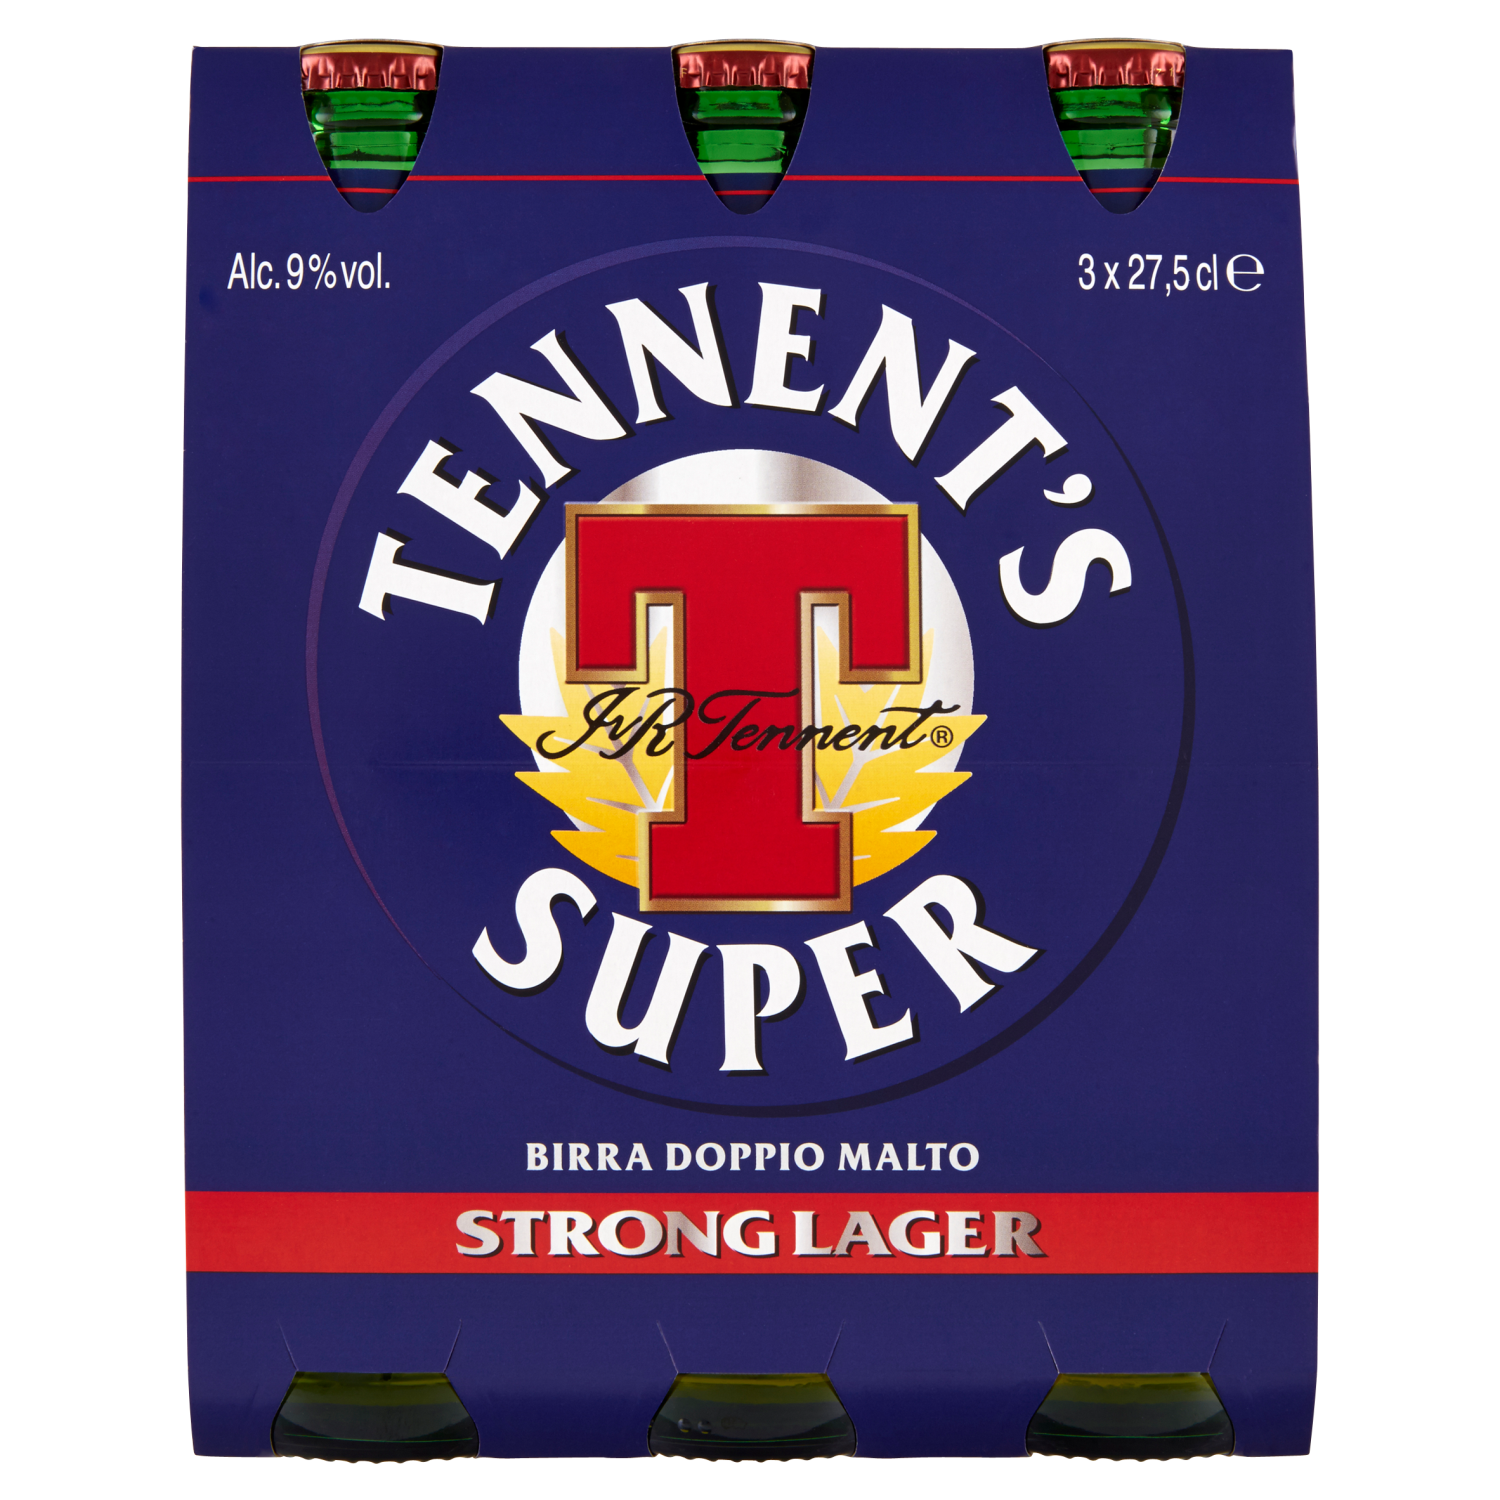 Tennent’s Super confezione 3 x 27,5cl